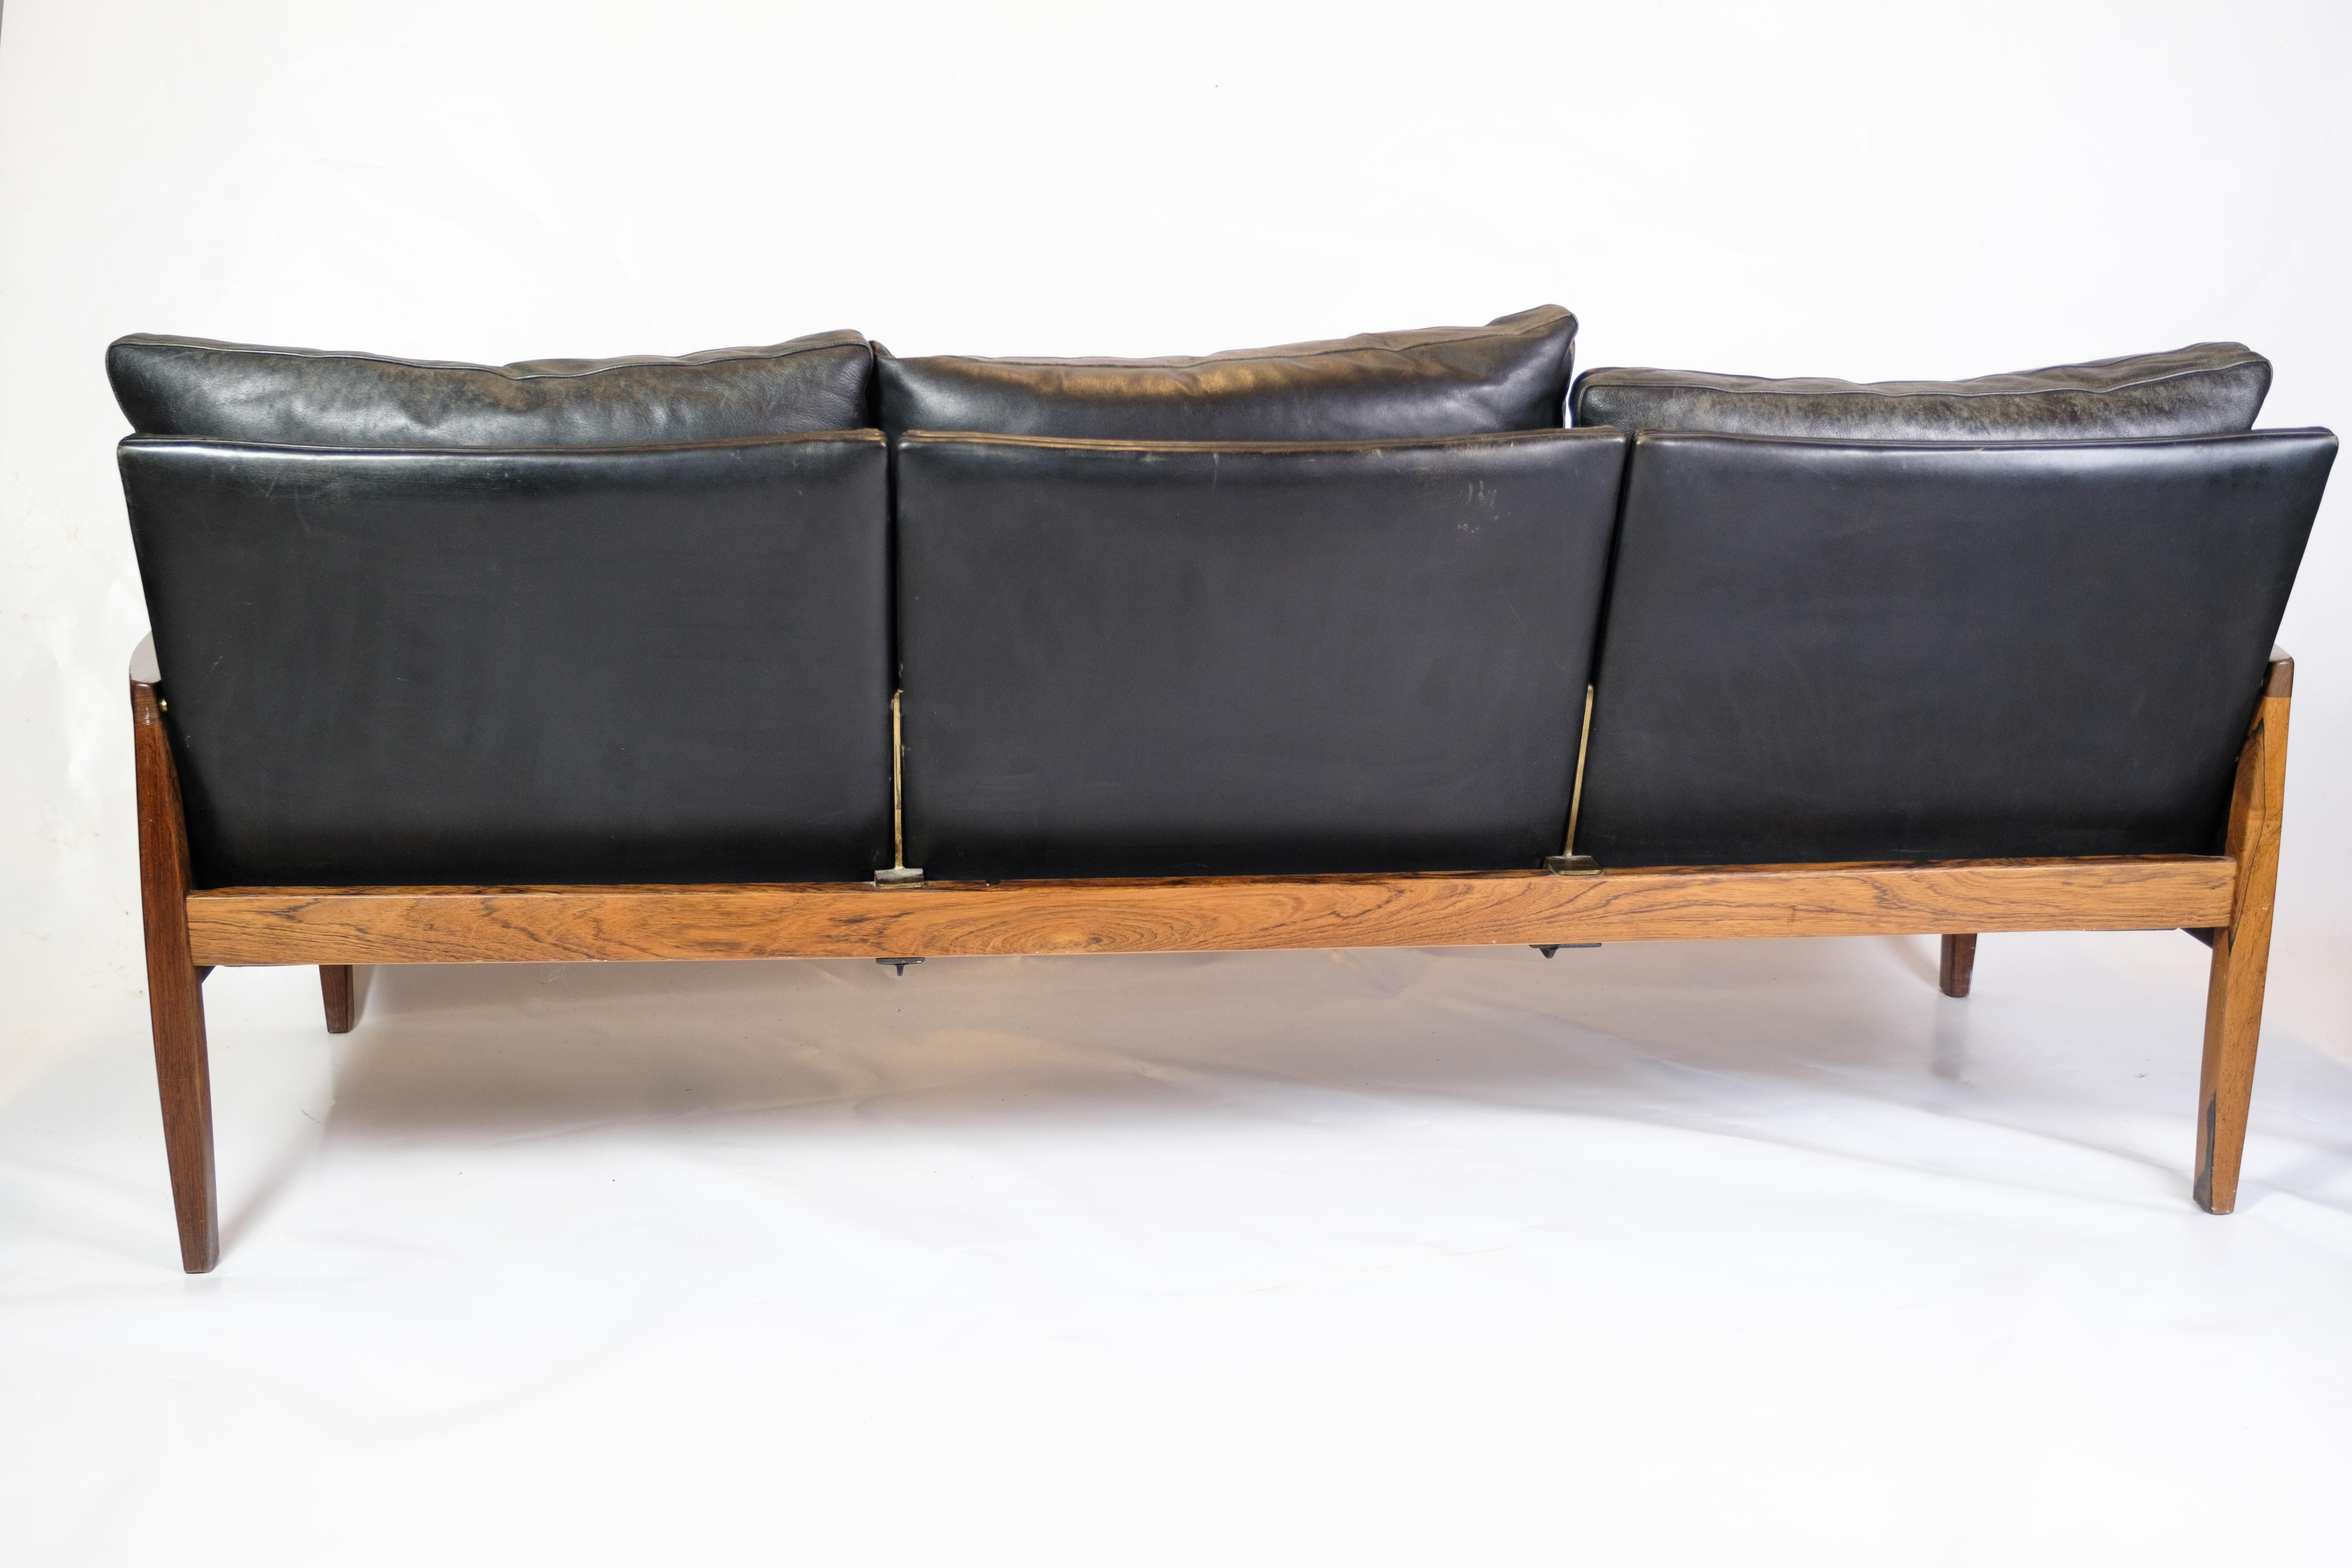 Dieses elegante 3-Sitzer-Sofa verbindet Luxus mit Komfort und Funktionalität. Aus massivem Palisanderholz gefertigt und mit schwarzen Lederkissen gepolstert, bietet dieses Sofa ein anspruchsvolles und komfortables Sitzerlebnis. Die schöne Silhouette